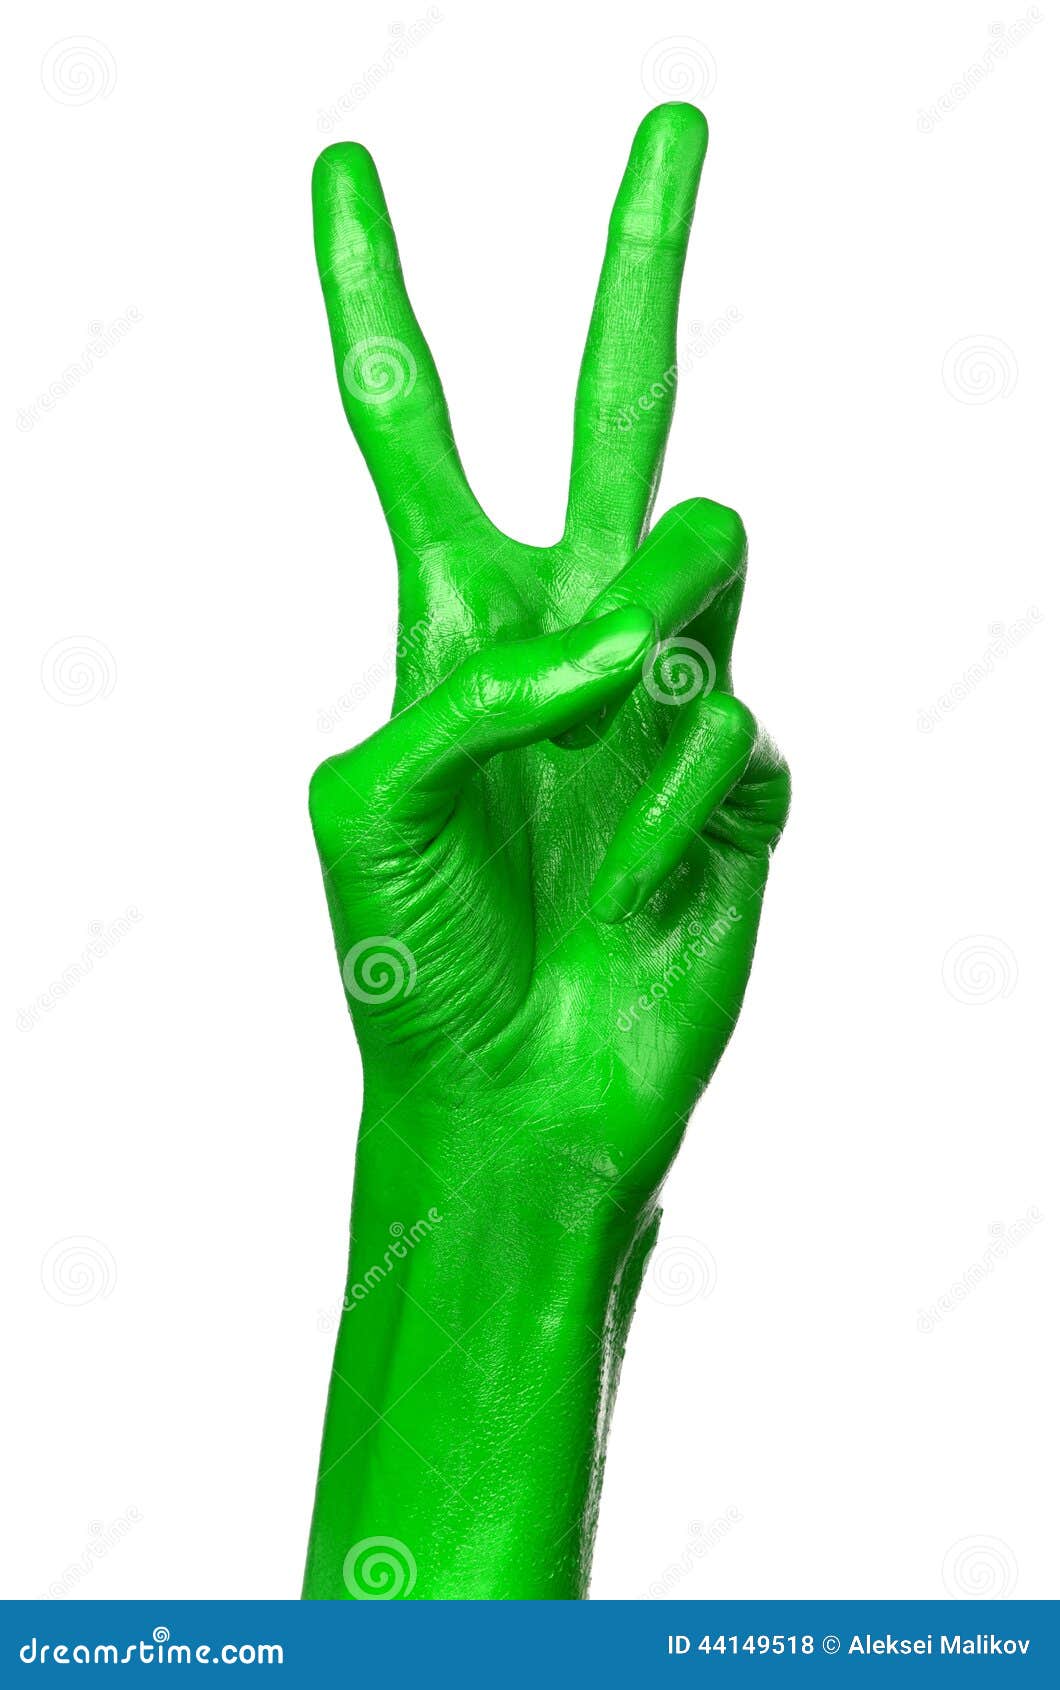 Правая рука зеленая. Зеленая рука. Зеленые руки на белом фоне. Рука зеленая прозрачный фон. Левая рука на зеленом фоне.